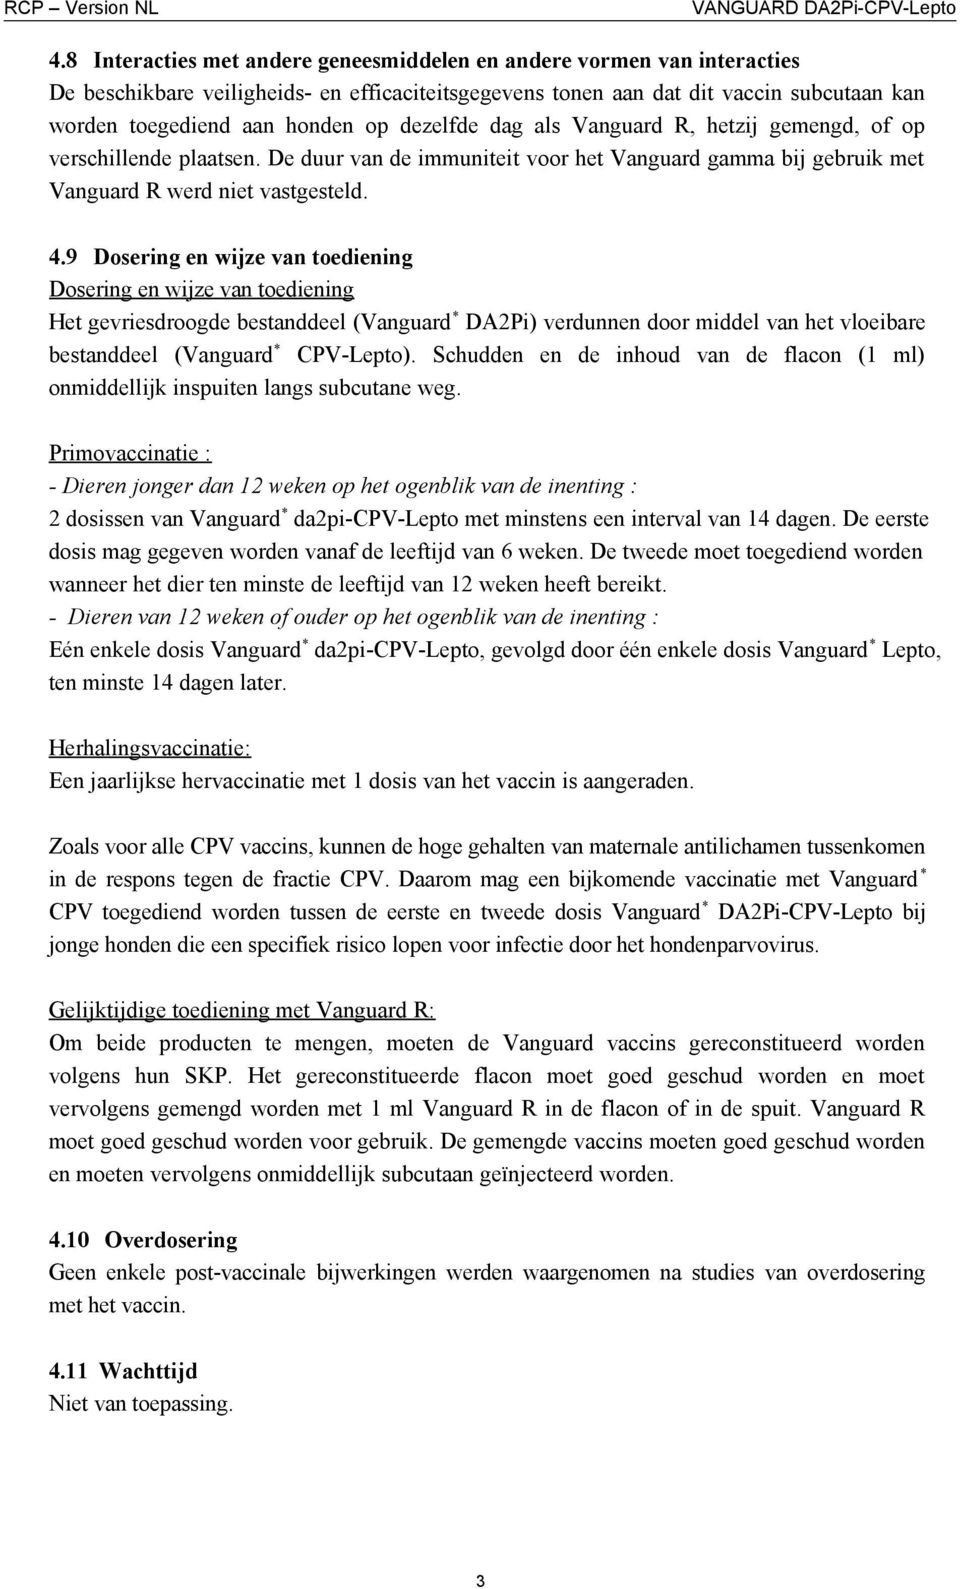 9 Dosering en wijze van toediening Dosering en wijze van toediening Het gevriesdroogde bestanddeel (Vanguard * DA2Pi) verdunnen door middel van het vloeibare bestanddeel (Vanguard * CPV-Lepto).